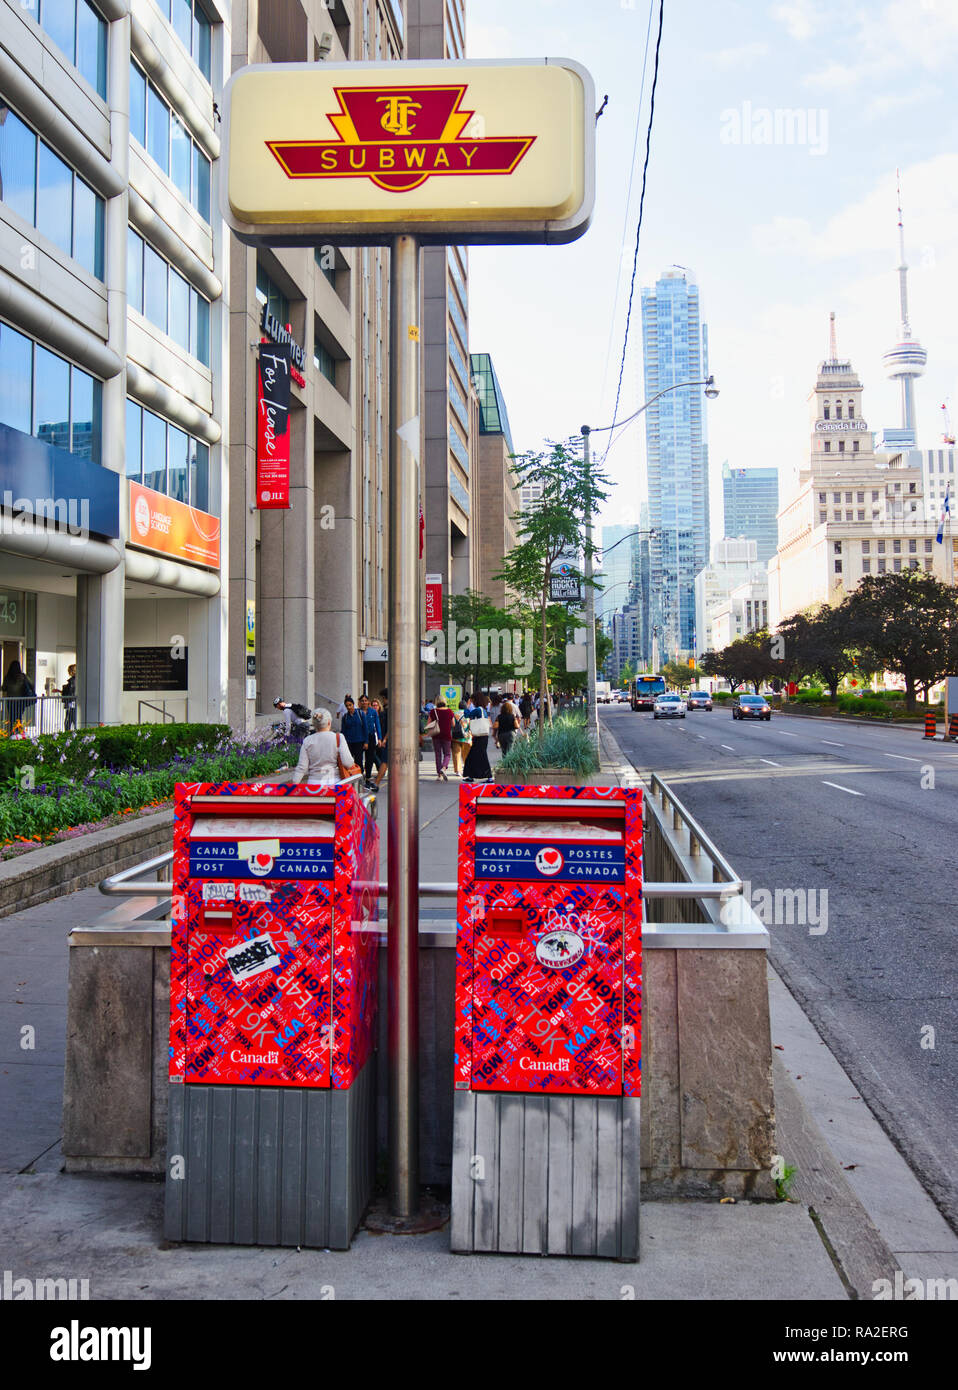 Toronto subway sign and Canada Post ( Postes Canada) postboxes, Toronto, Ontario, Canada Stock Photo